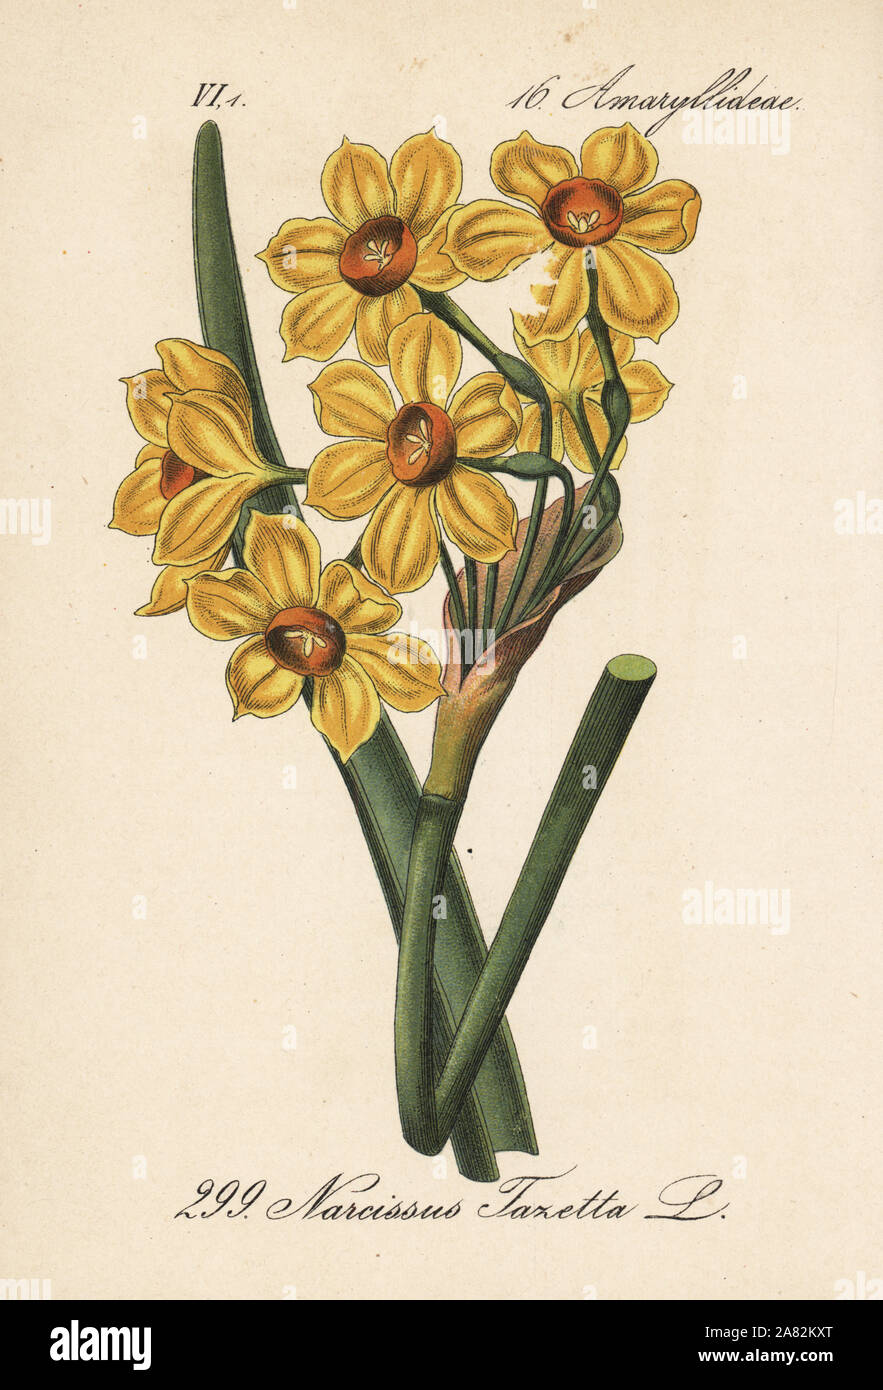 Bunch-flowered daffodil, Narcissus tazetta. Handcoloured lithograph from Diederich von Schlechtendal's German Flora (Flora von Deutschland), Jena, 1871. Stock Photo